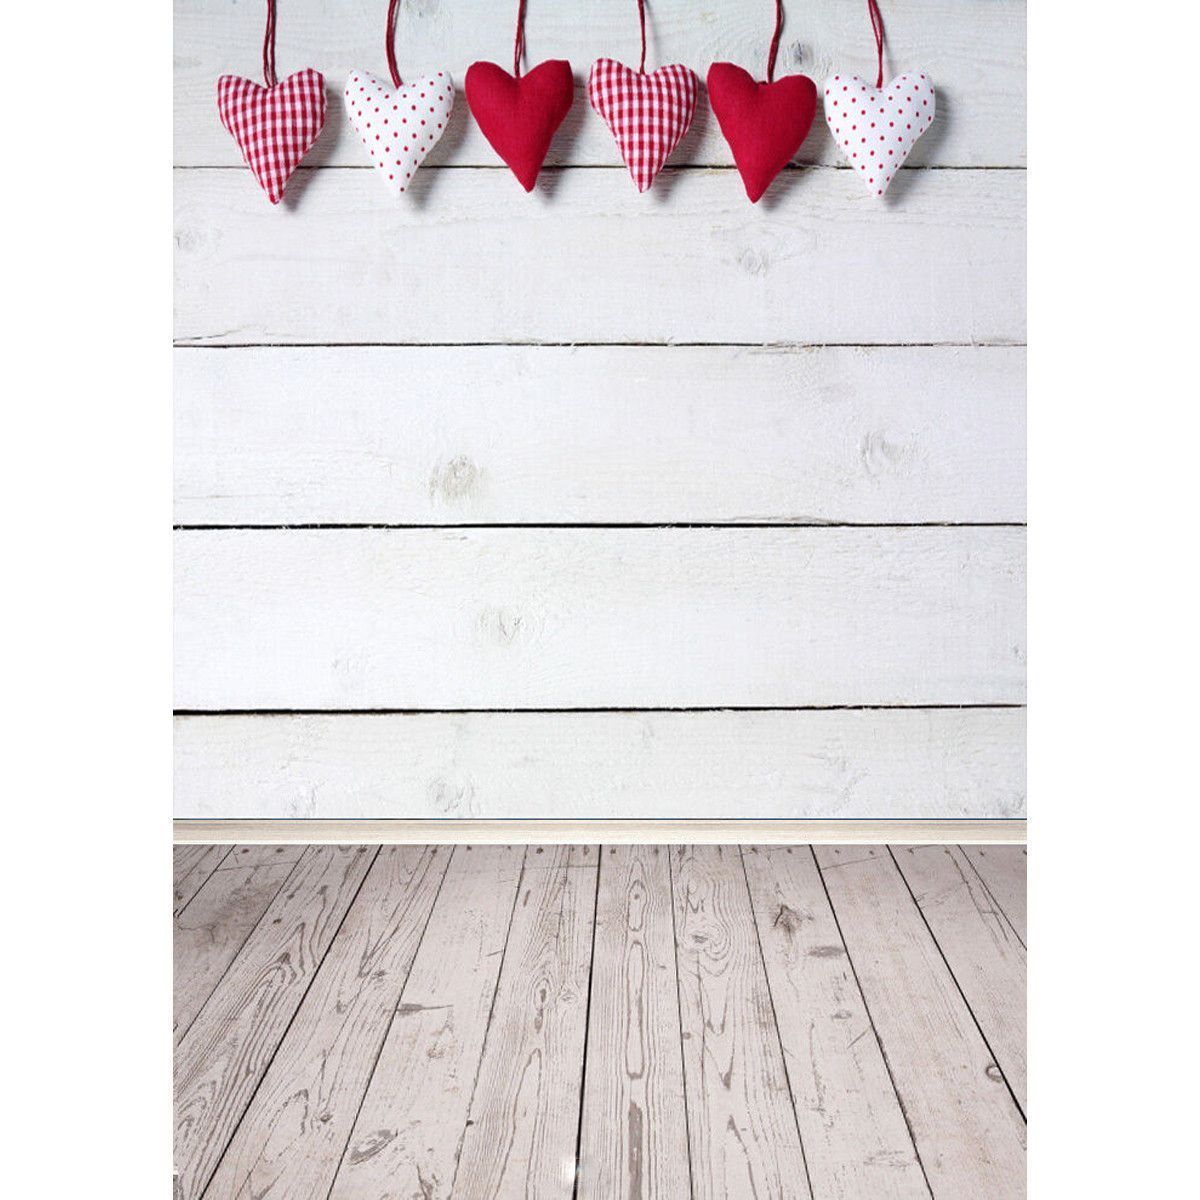 5x7FT-Vinyl-Valentines-Day-Heart-Wood-Floor-Photography-Backdrop-Background-Studio-Prop-1416350